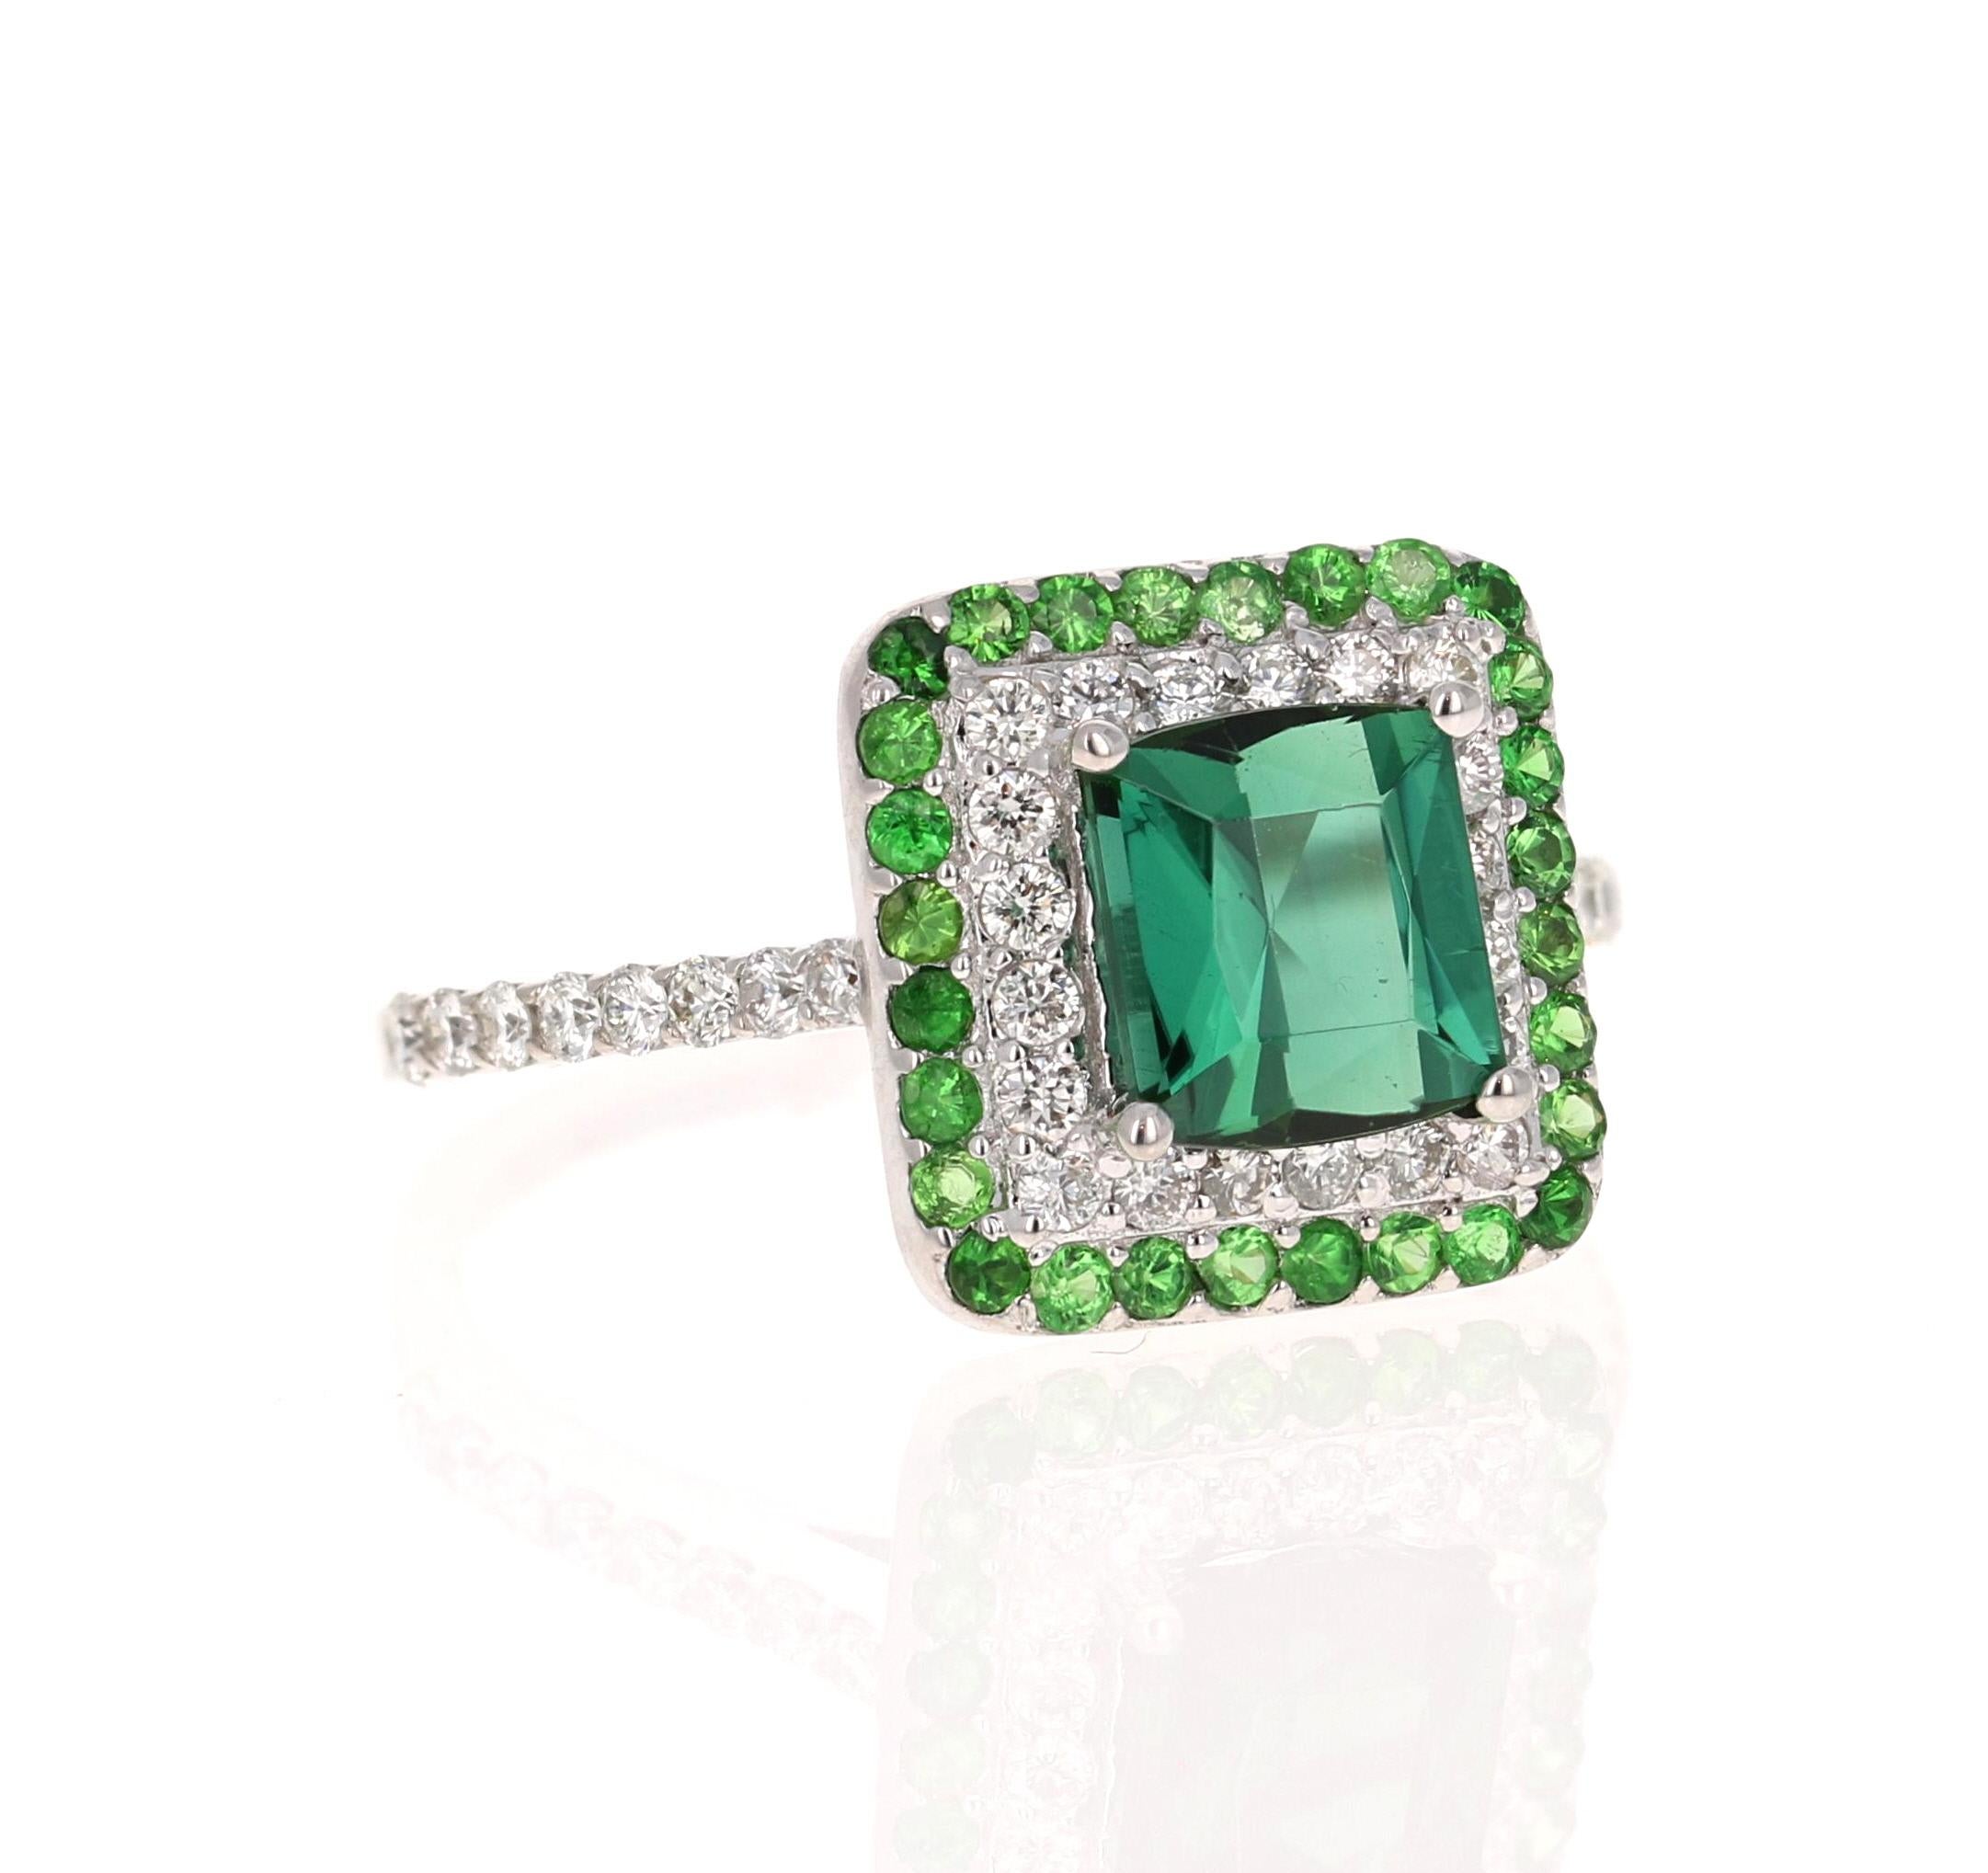 Dieser Ring hat einen wunderschönen grünen Turmalin im Quadratschliff mit einem Gewicht von 1,58 Karat und 28 Diamanten im Rundschliff mit einem Gewicht von 0,47 Karat und einer Reinheit und Farbe von VS2-H. Er ist außerdem mit 28 Tsavoriten mit